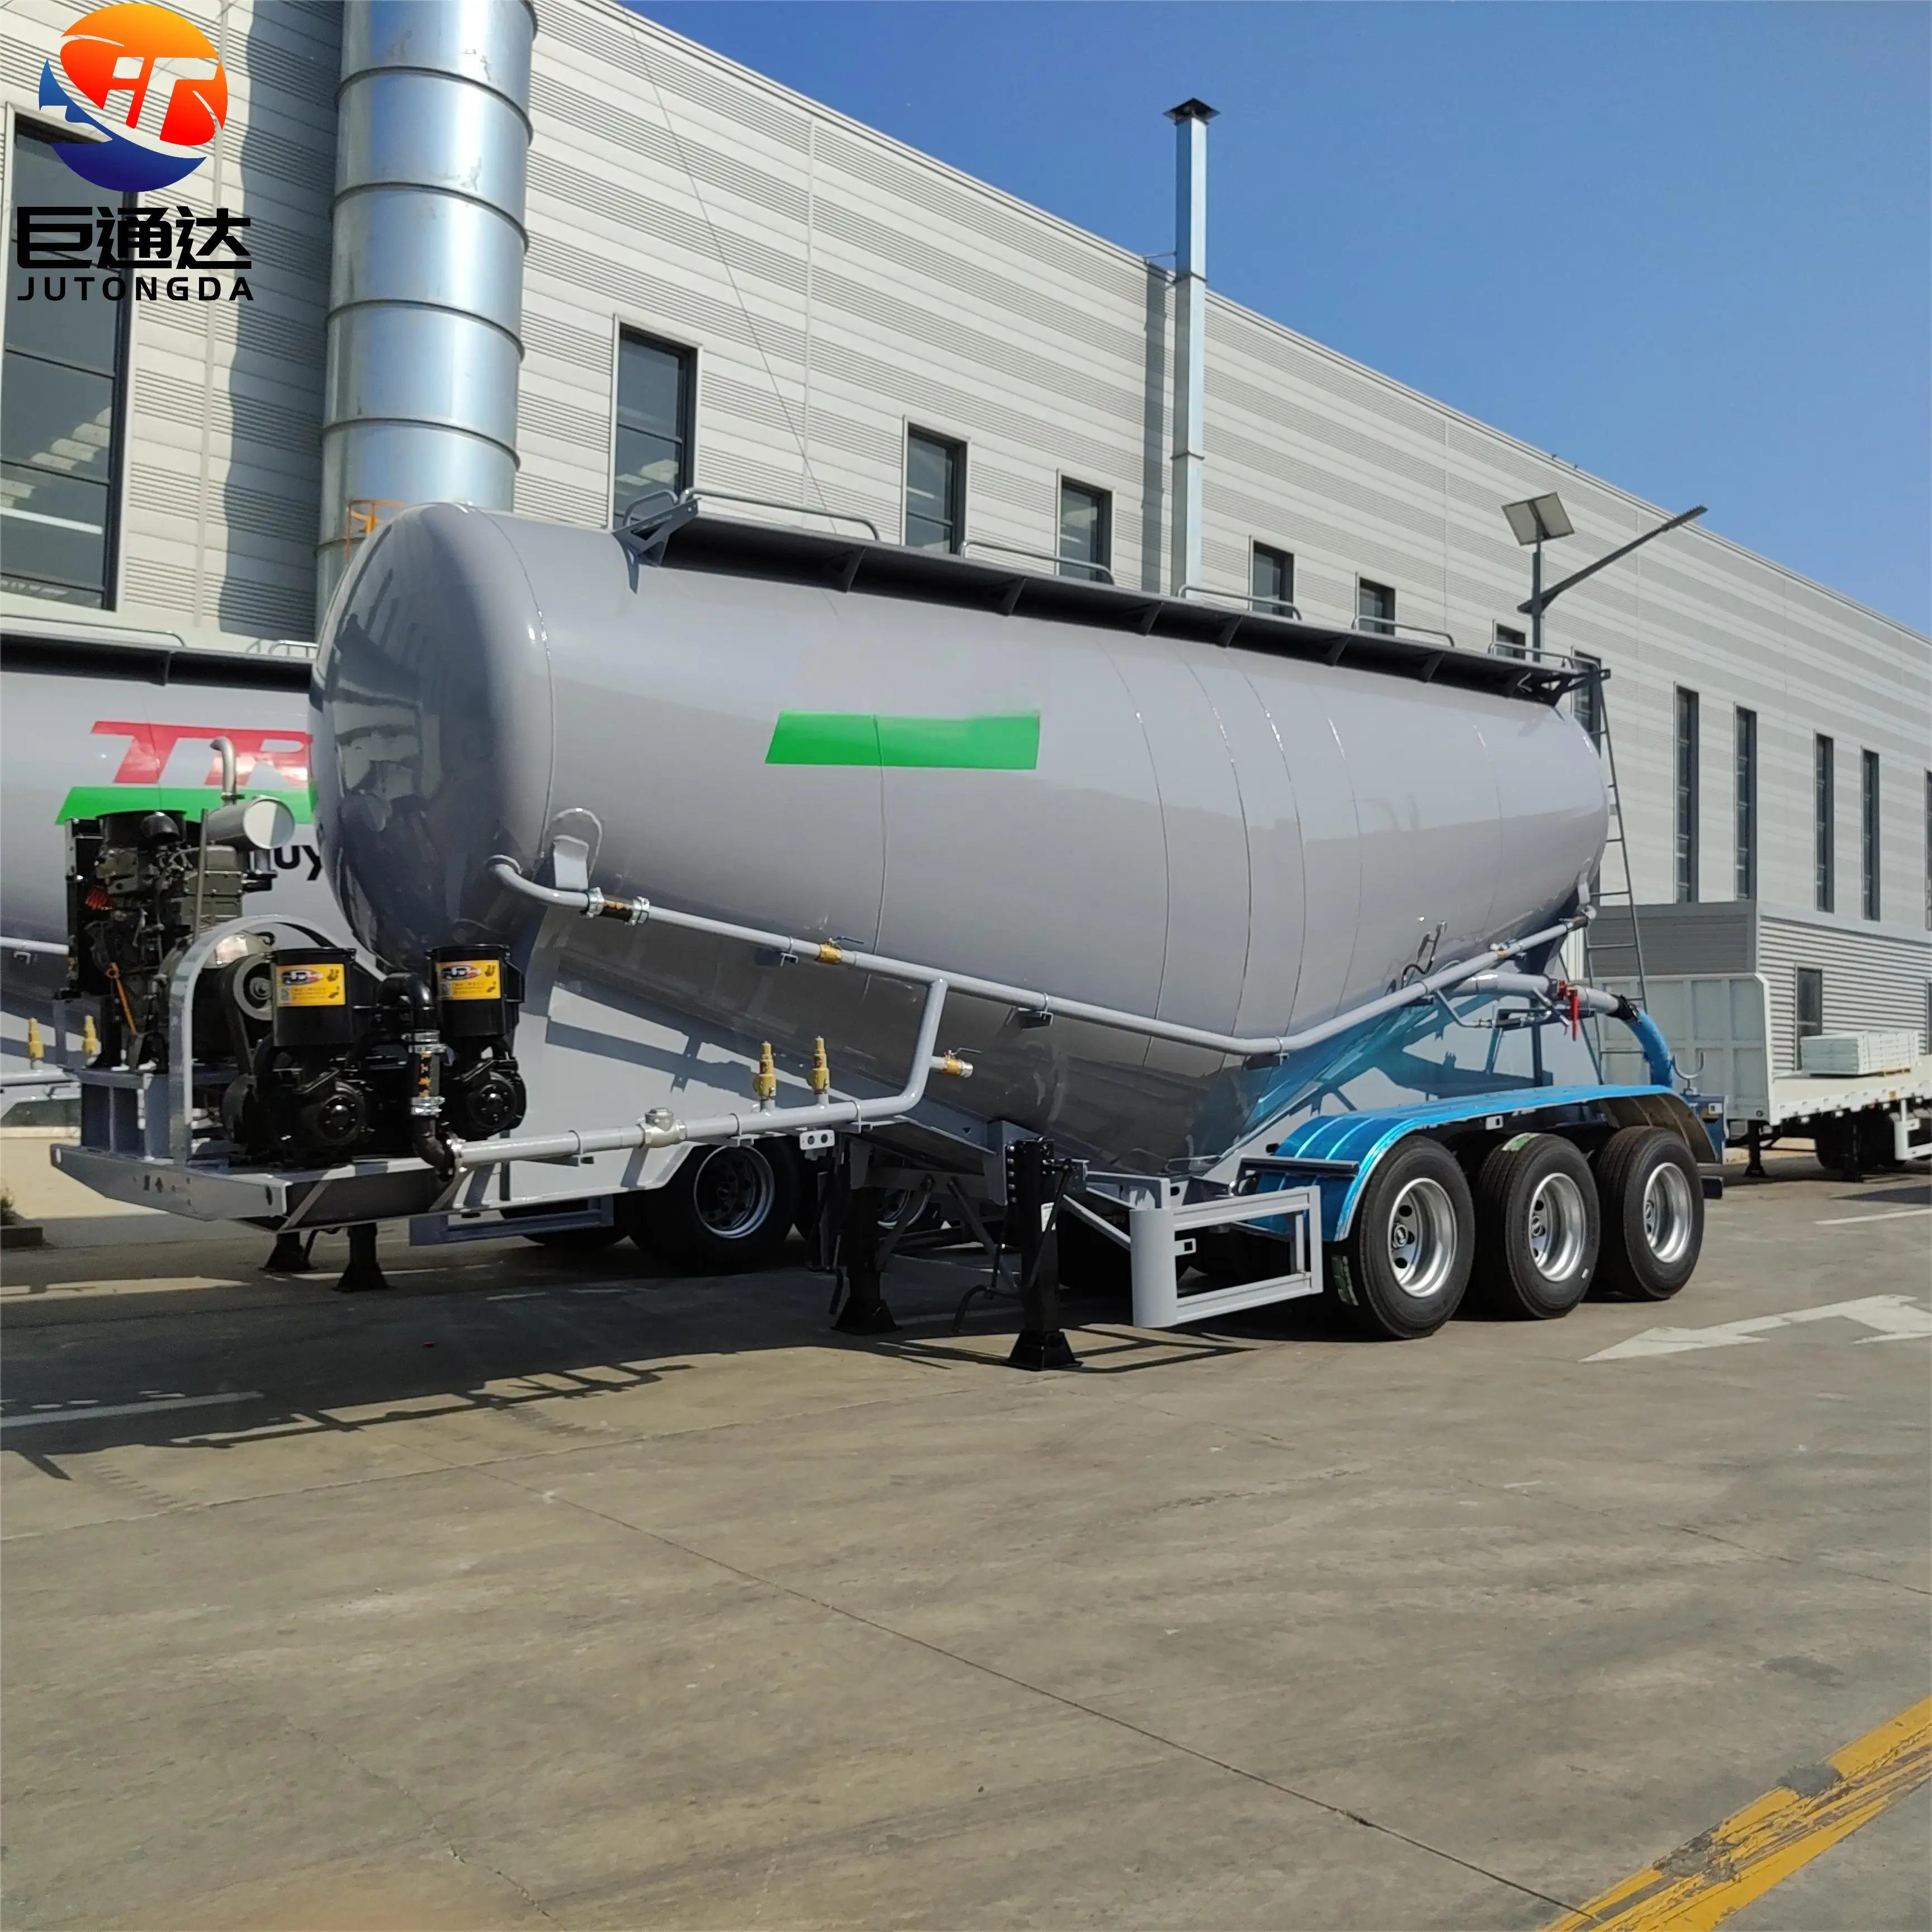 JT nouveau et utilisé transport de matériaux en acier en vrac ciment semi-remorque compartiment charge poudre-ciment citerne camion remorque